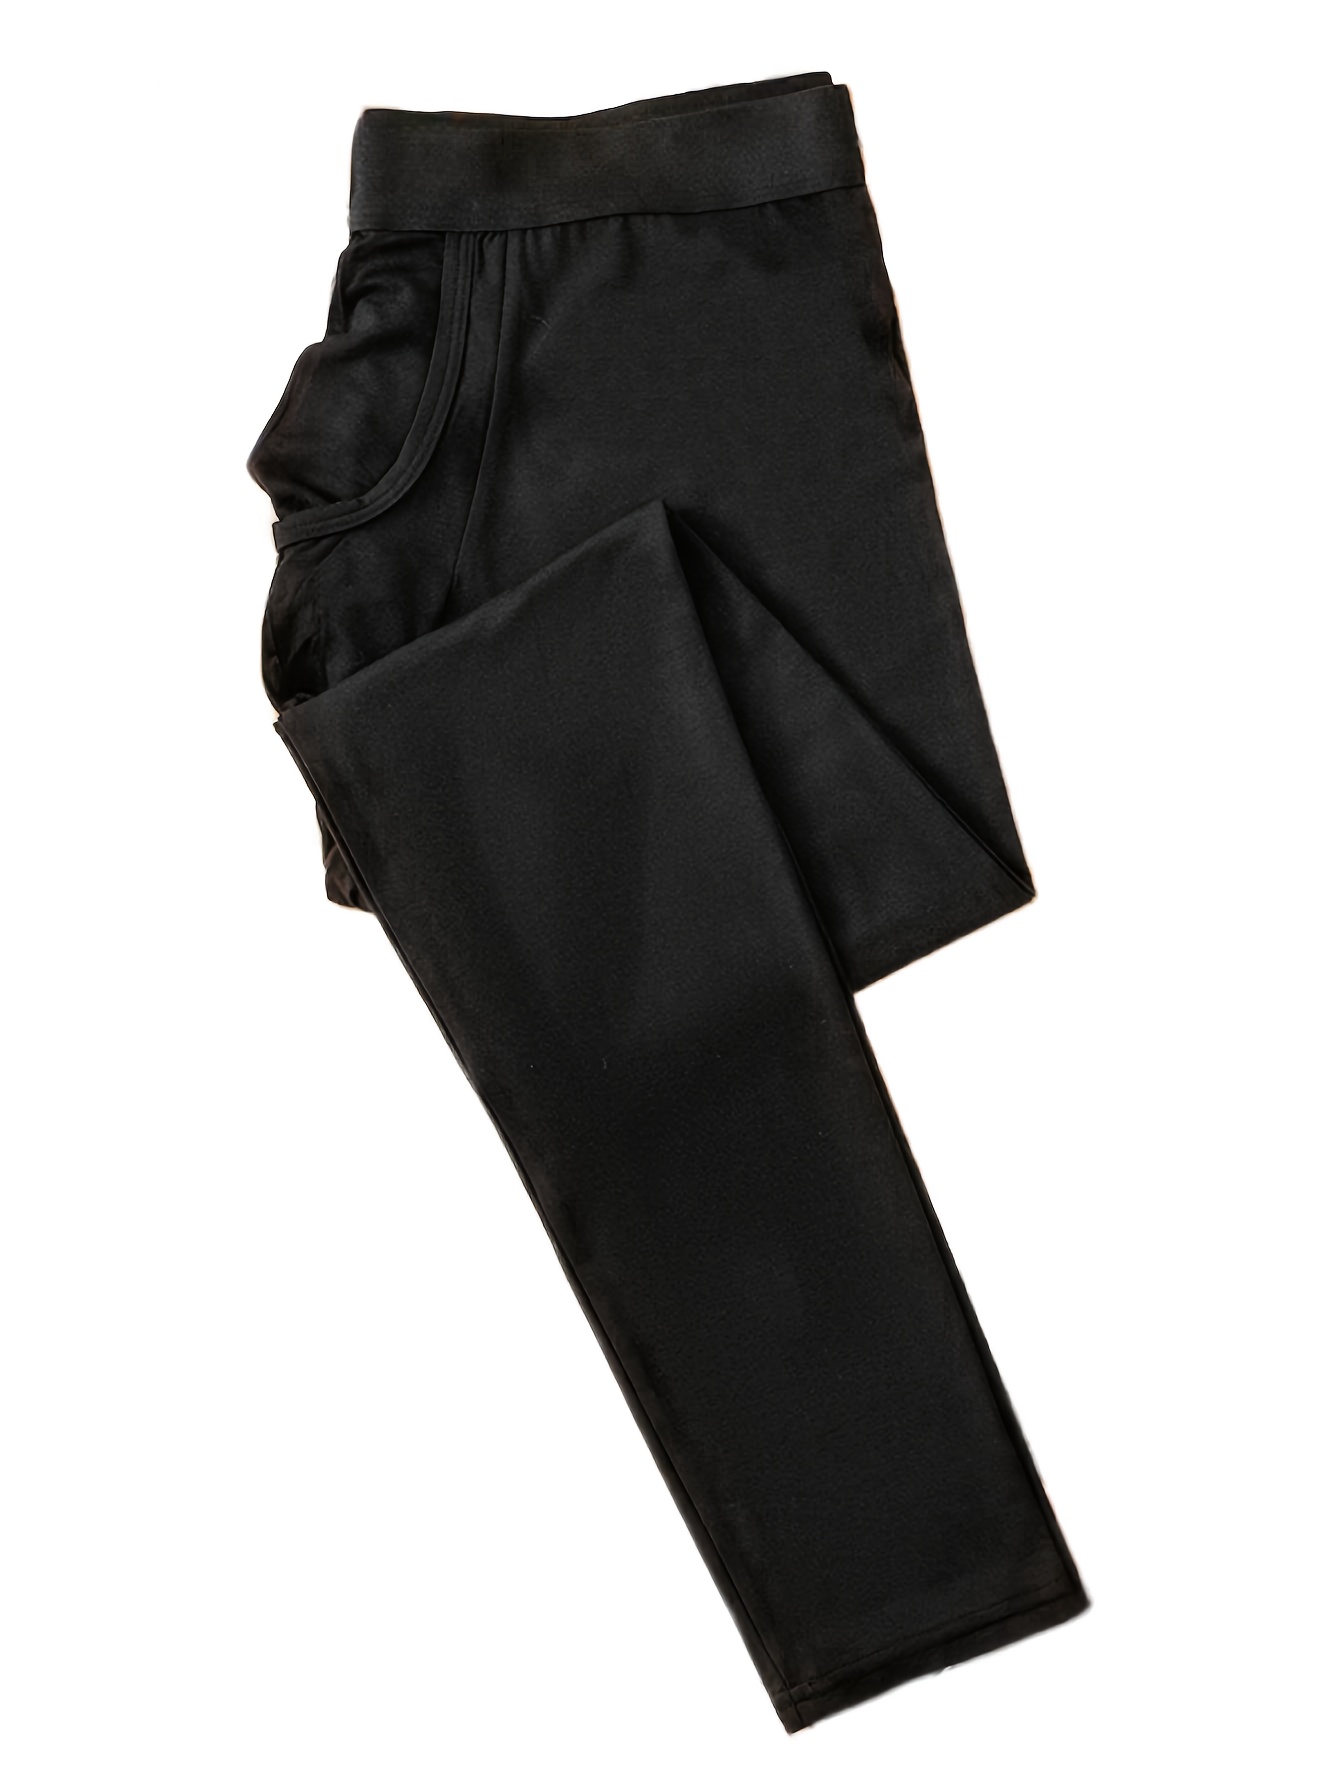 Mens Winter Thermal Pants Underwear Bottoms Cotton Long Warm Leggings Pants  (Color : Black, Size : 4XL) (Black 4XL) : : Clothing, Shoes &  Accessories